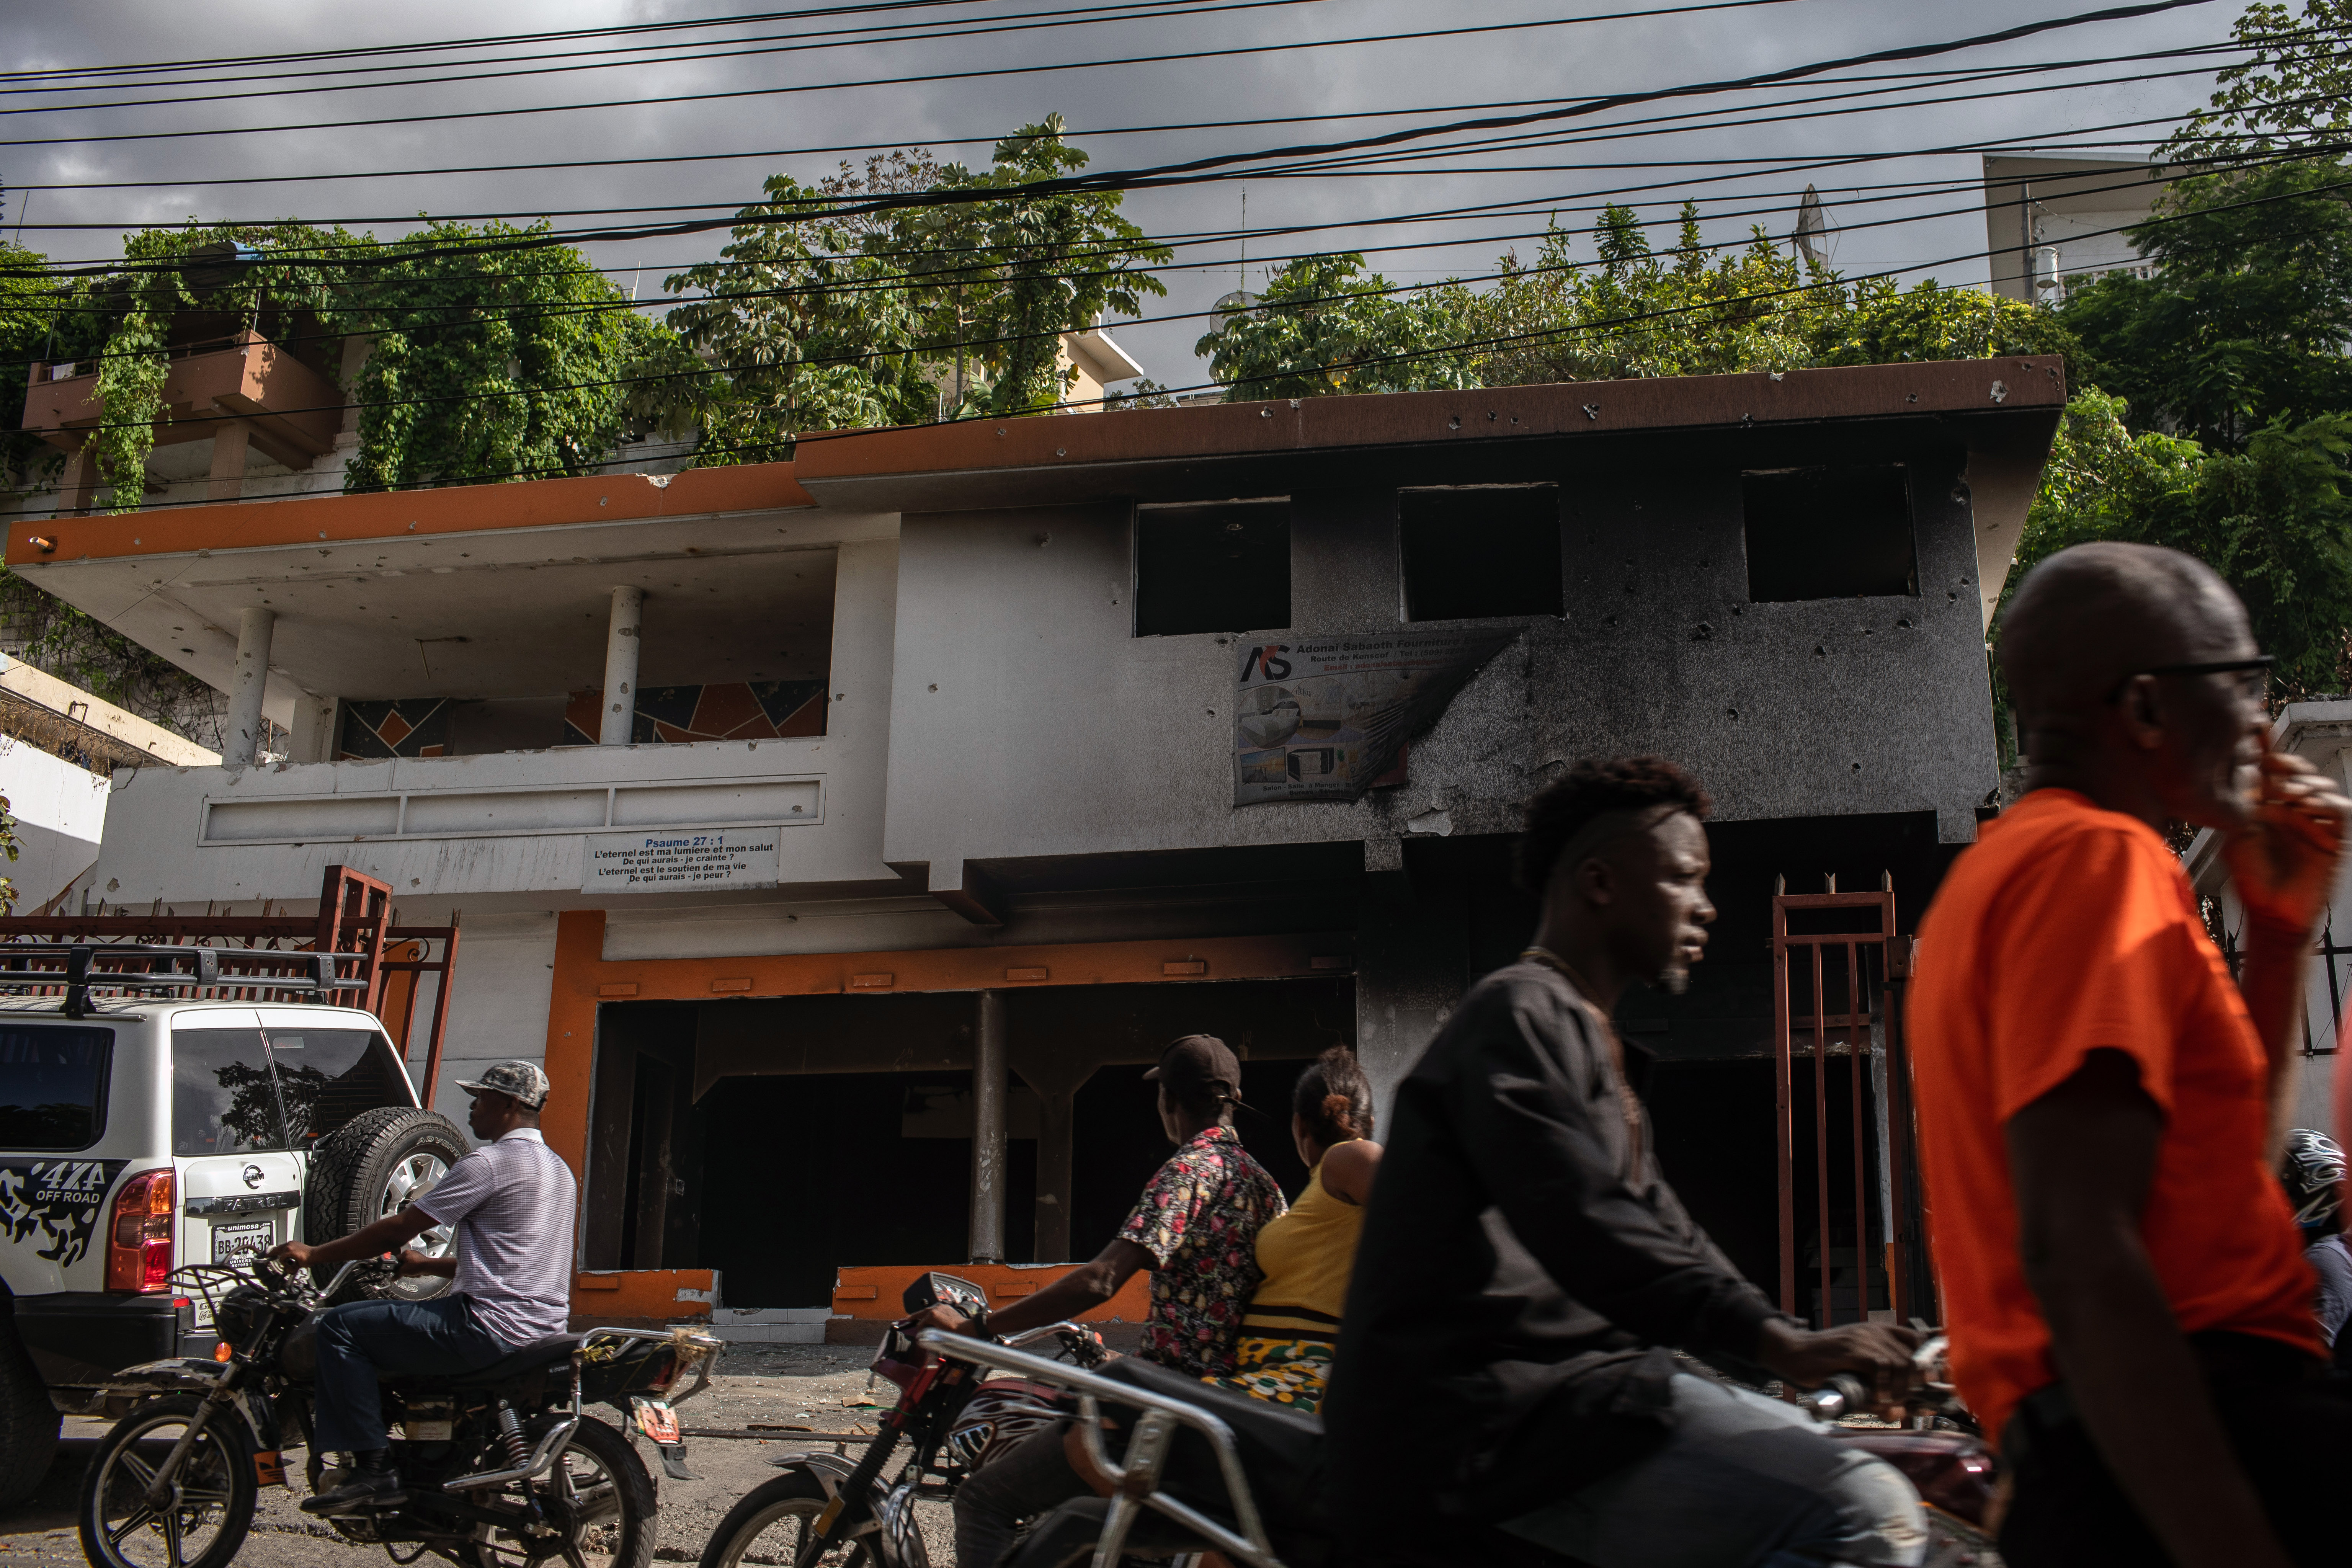 Agujeros de bala y hollín en la fachada de una casa de Puerto Príncipe donde, al parecer, se escondieron algunos de los acusados del asesinato de Moïse la noche en que fue abatido. (Foto Prensa Libre: Victor Moriyama para The New York Times)